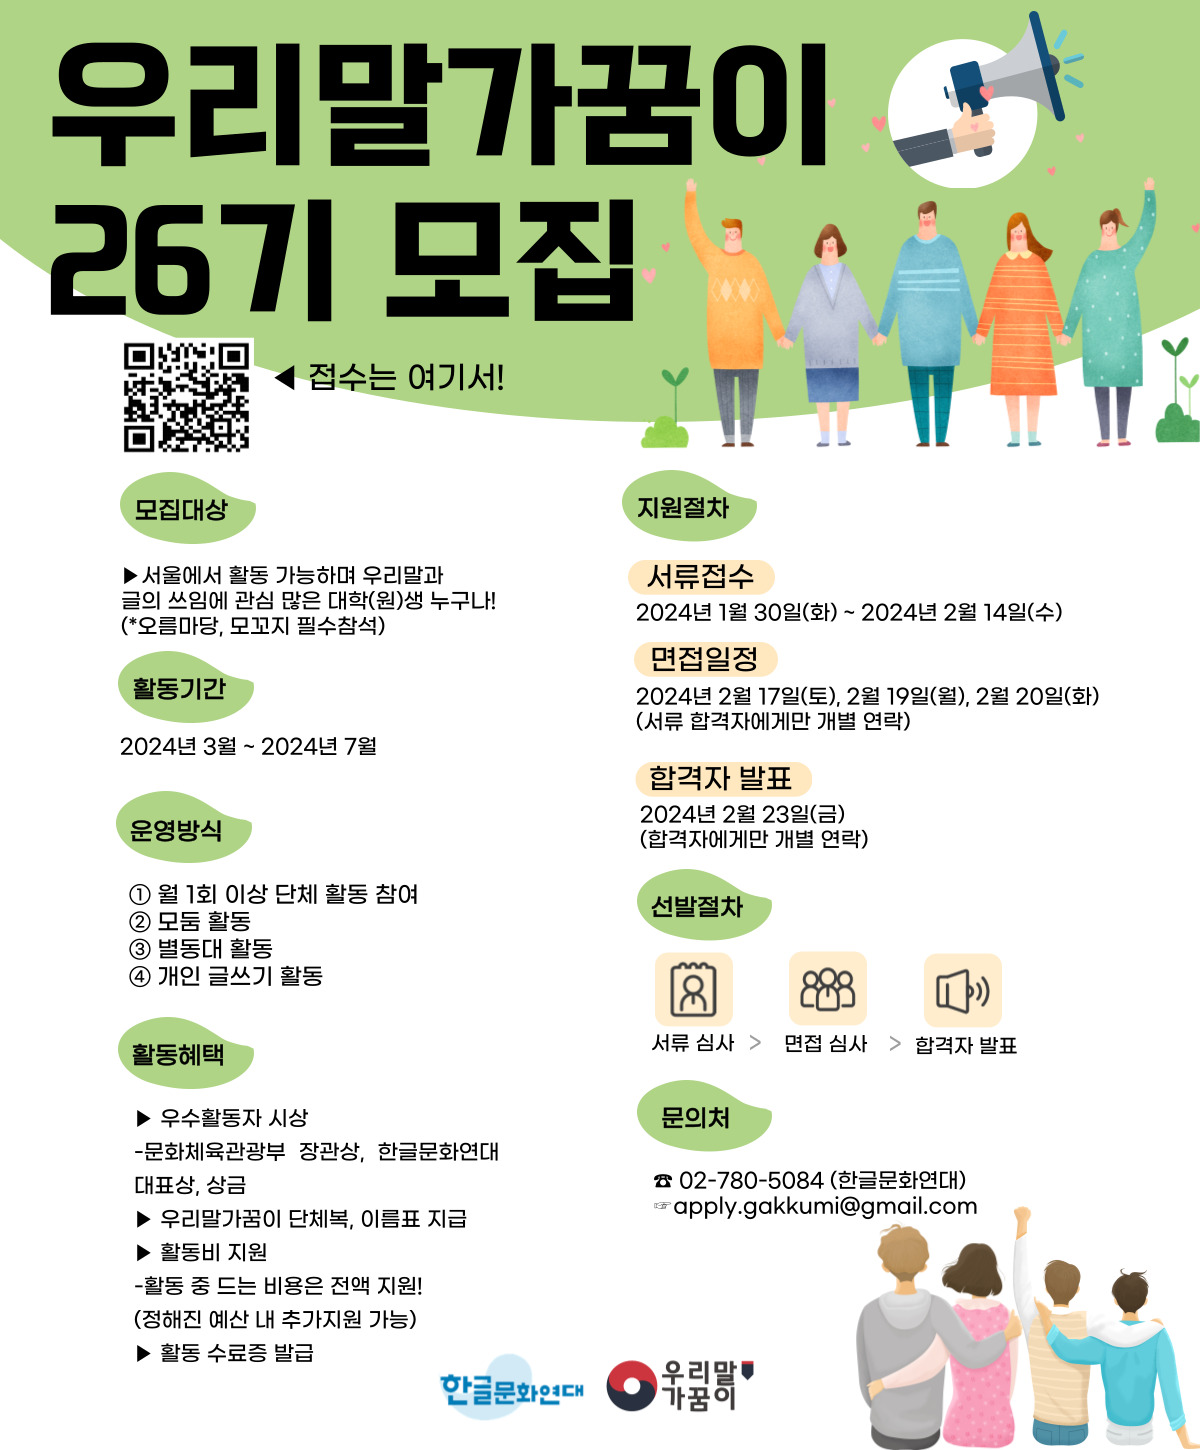 한글문화연대 우리말가꿈이 26기 모집
~2024.02.14(수)까지
한글문화연대 02-780-5084